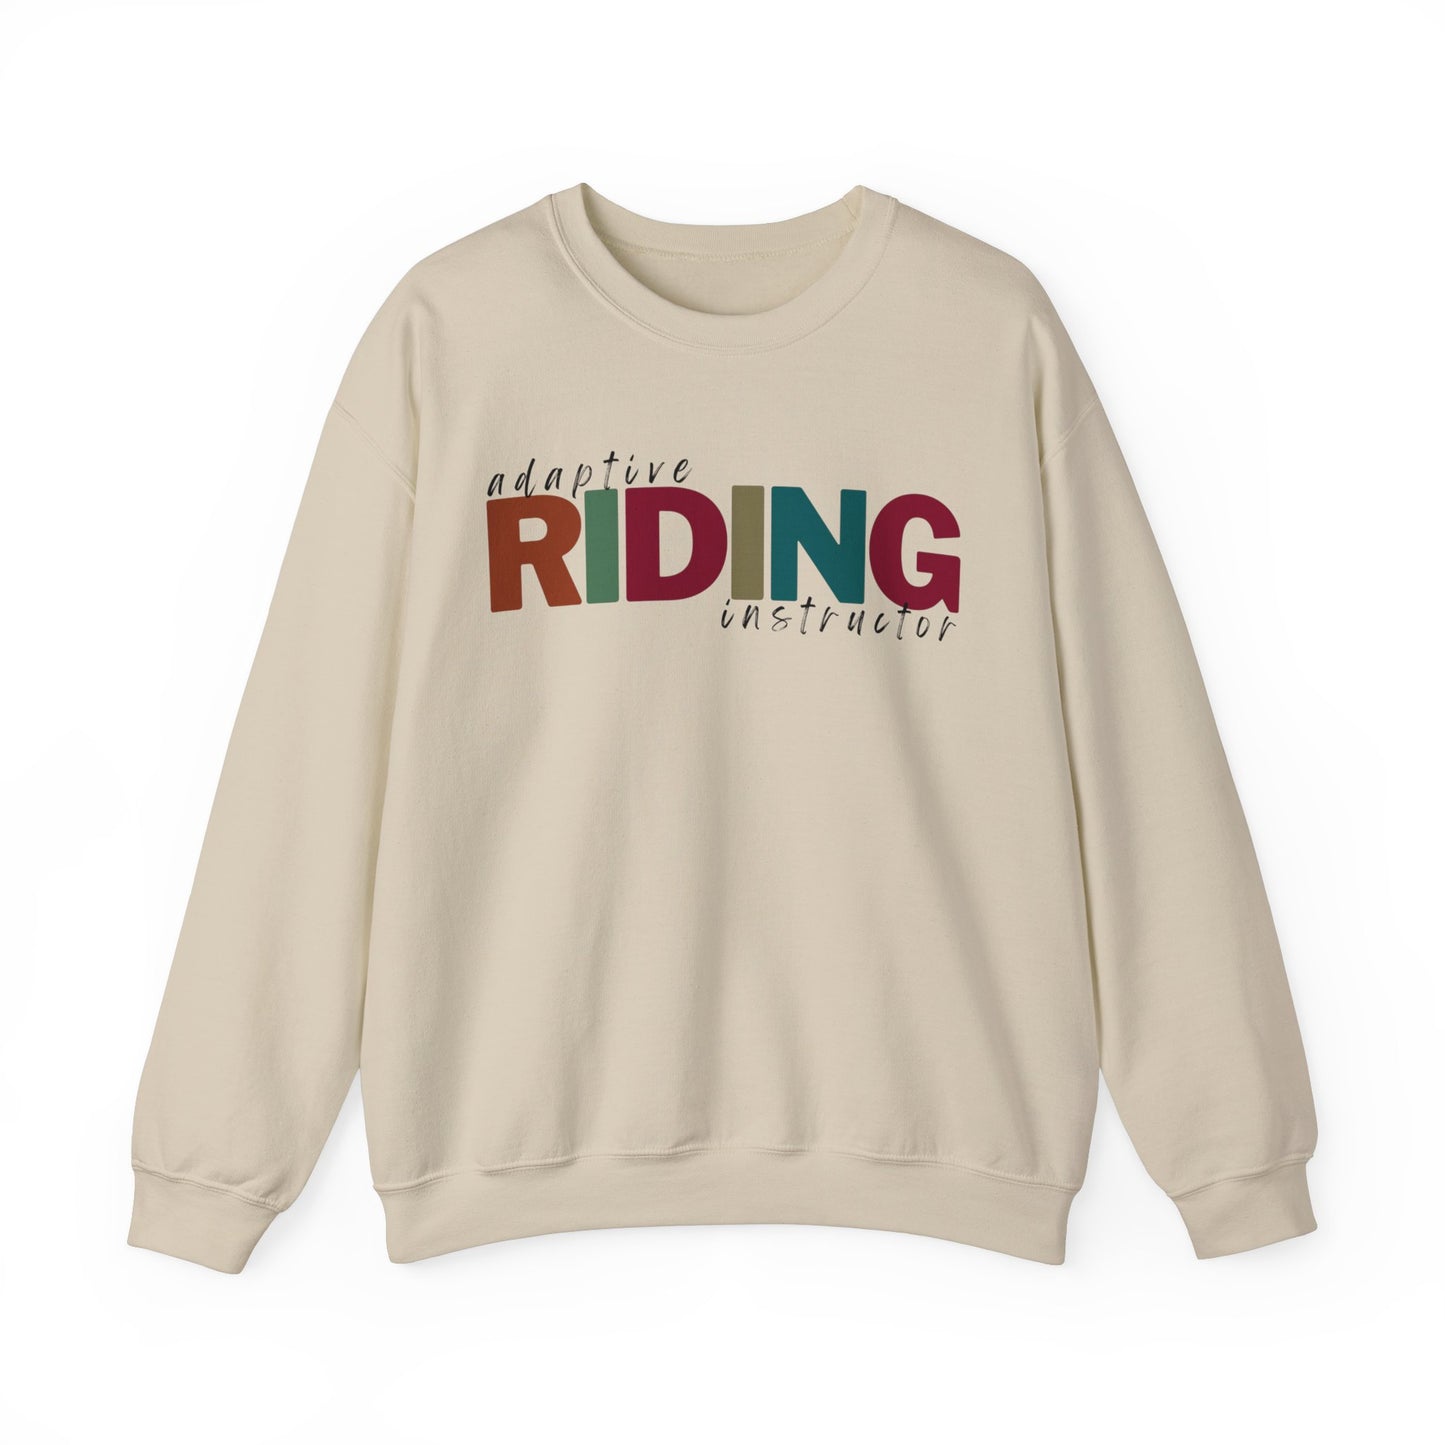 Adaptive Riding Instructor - unisex crewneck sweatshirt